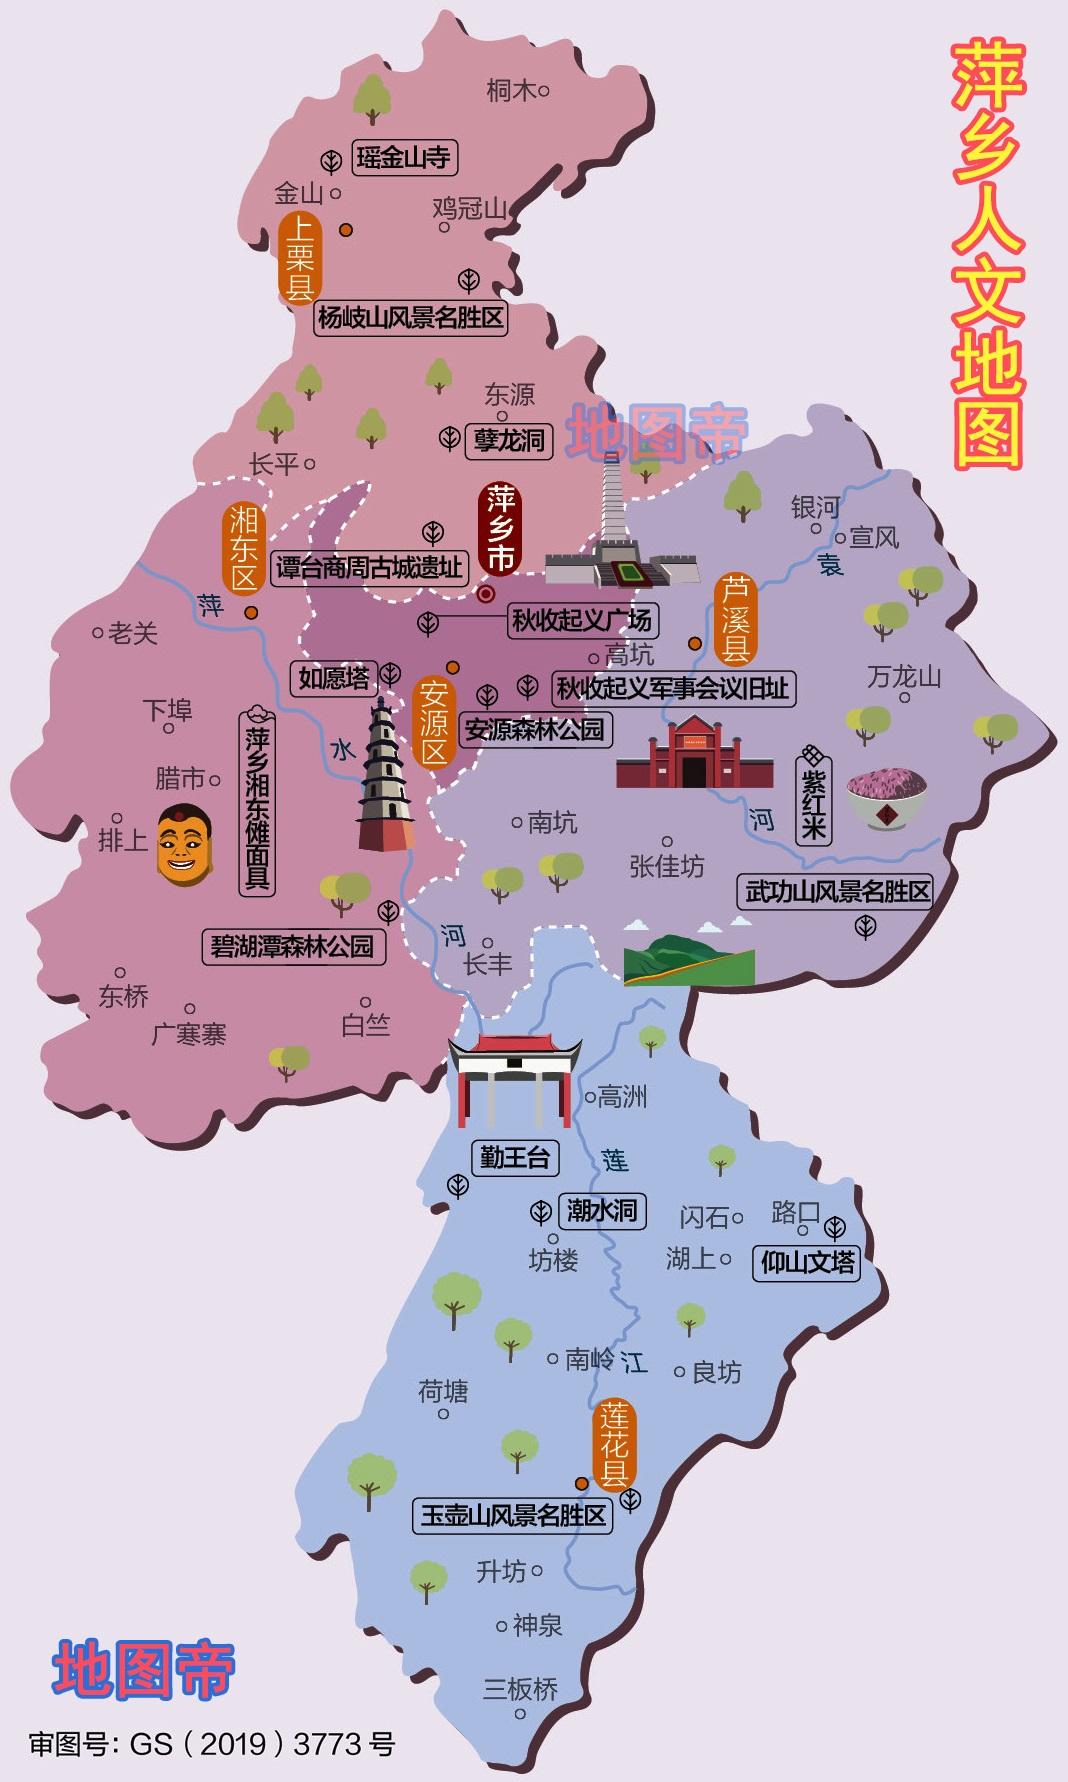 江西哪个市人口最多_江西省人口最多的五个县级市,宜春市就有两个